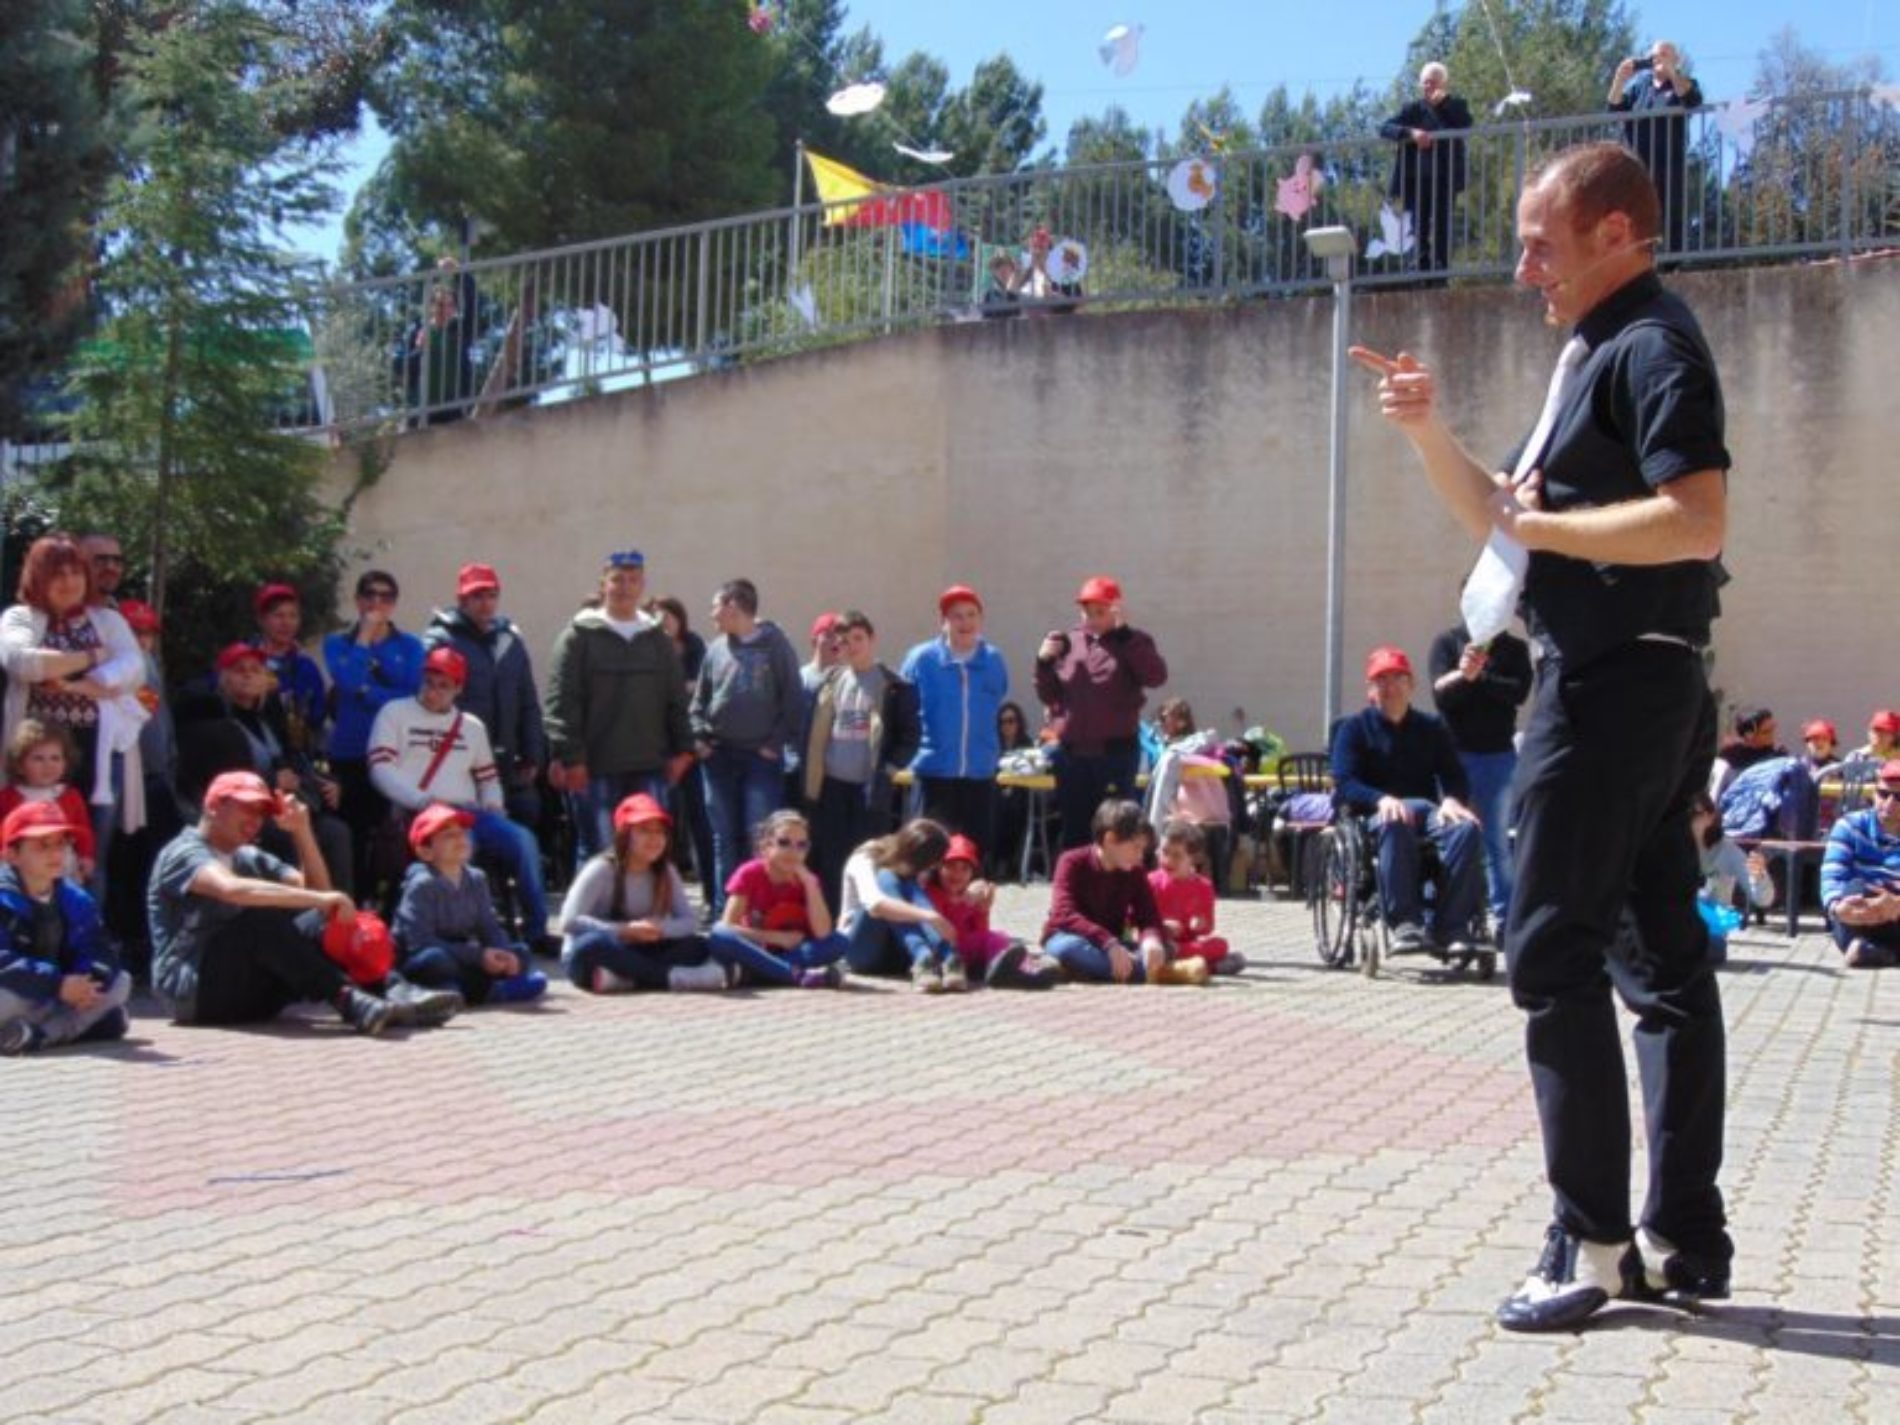 Disabili. A Barrafranca la VII edizione della “Festa di Primavera” per la giornata di integrazione sociale nella struttura Csr-Aias